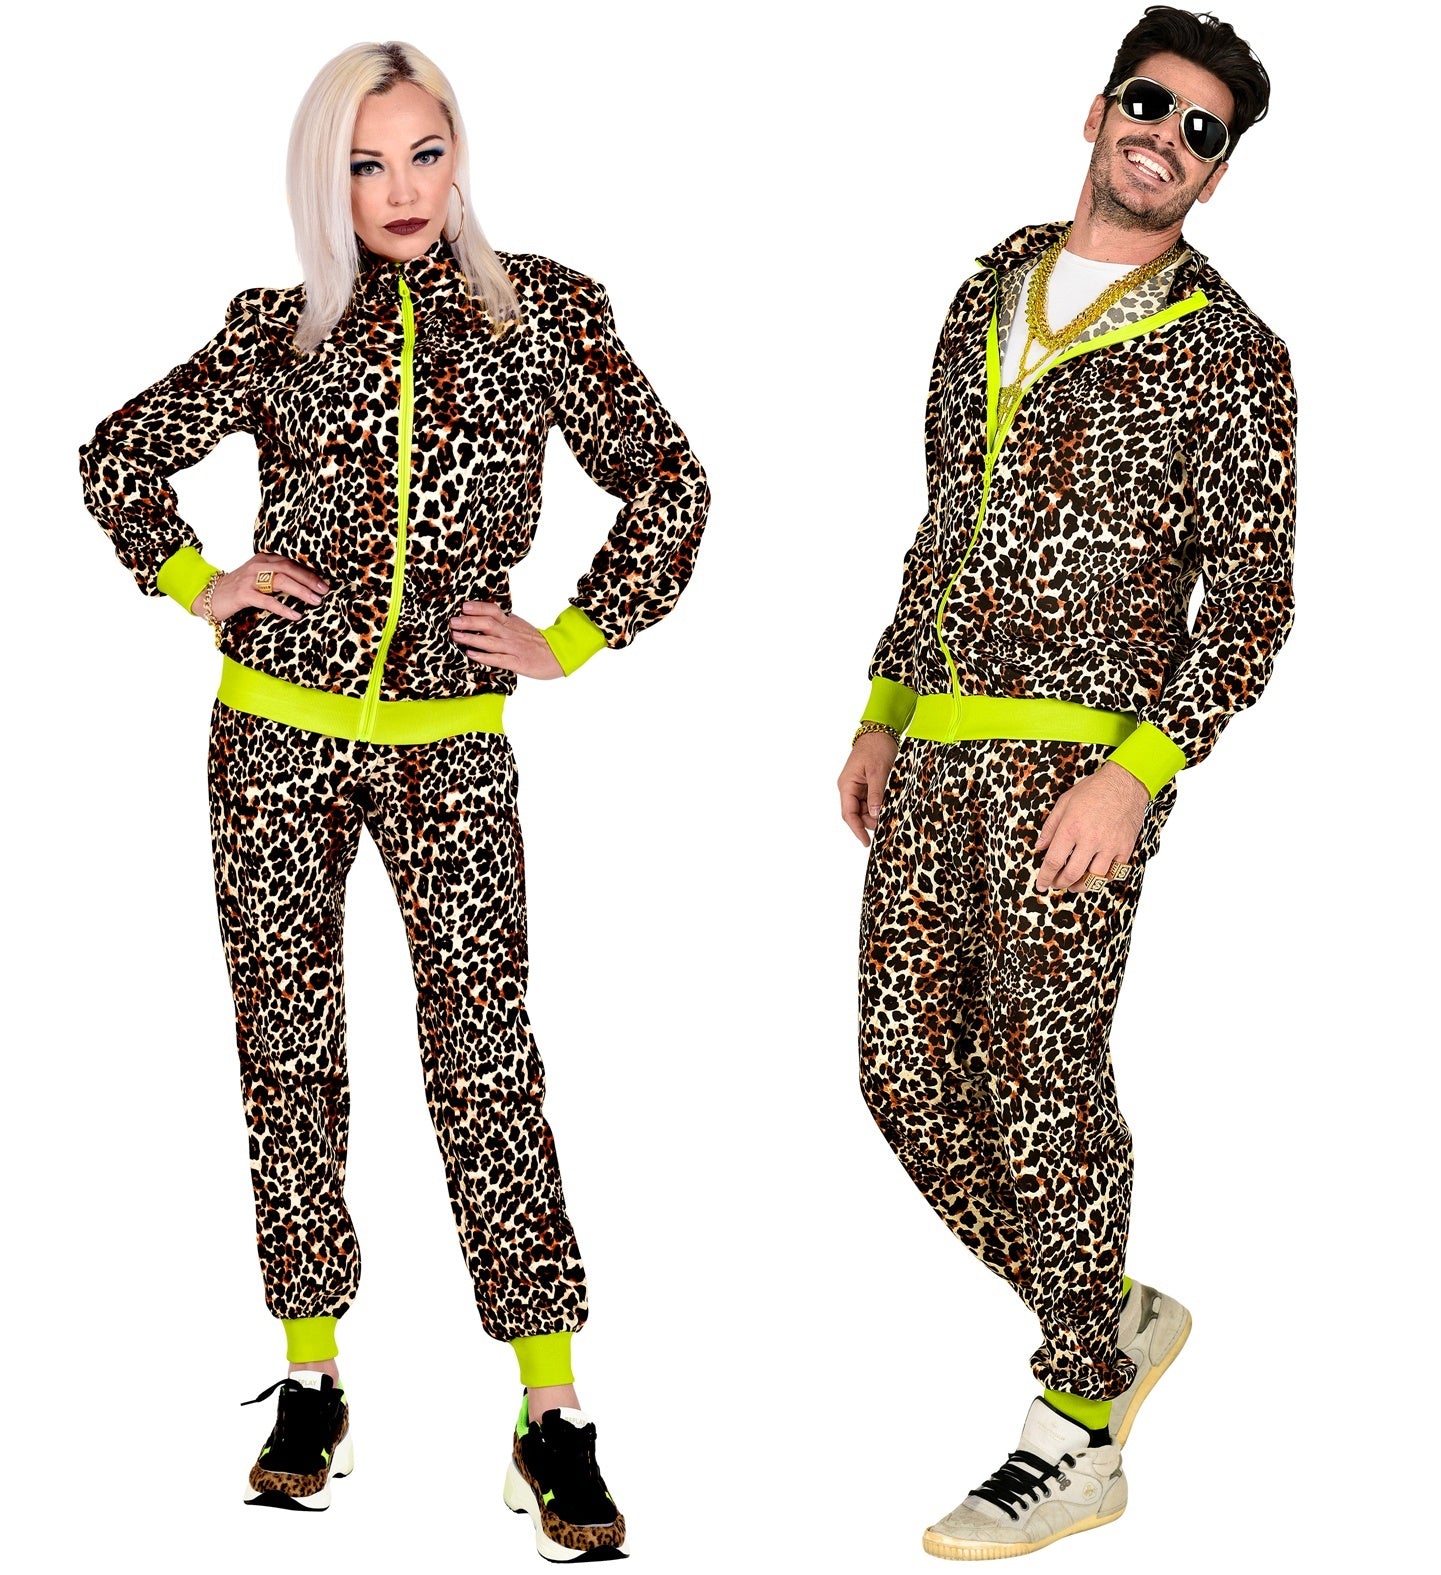 WIDMANN - Jaren '80 luipaard trainingspak kostuum voor volwassenen - XL